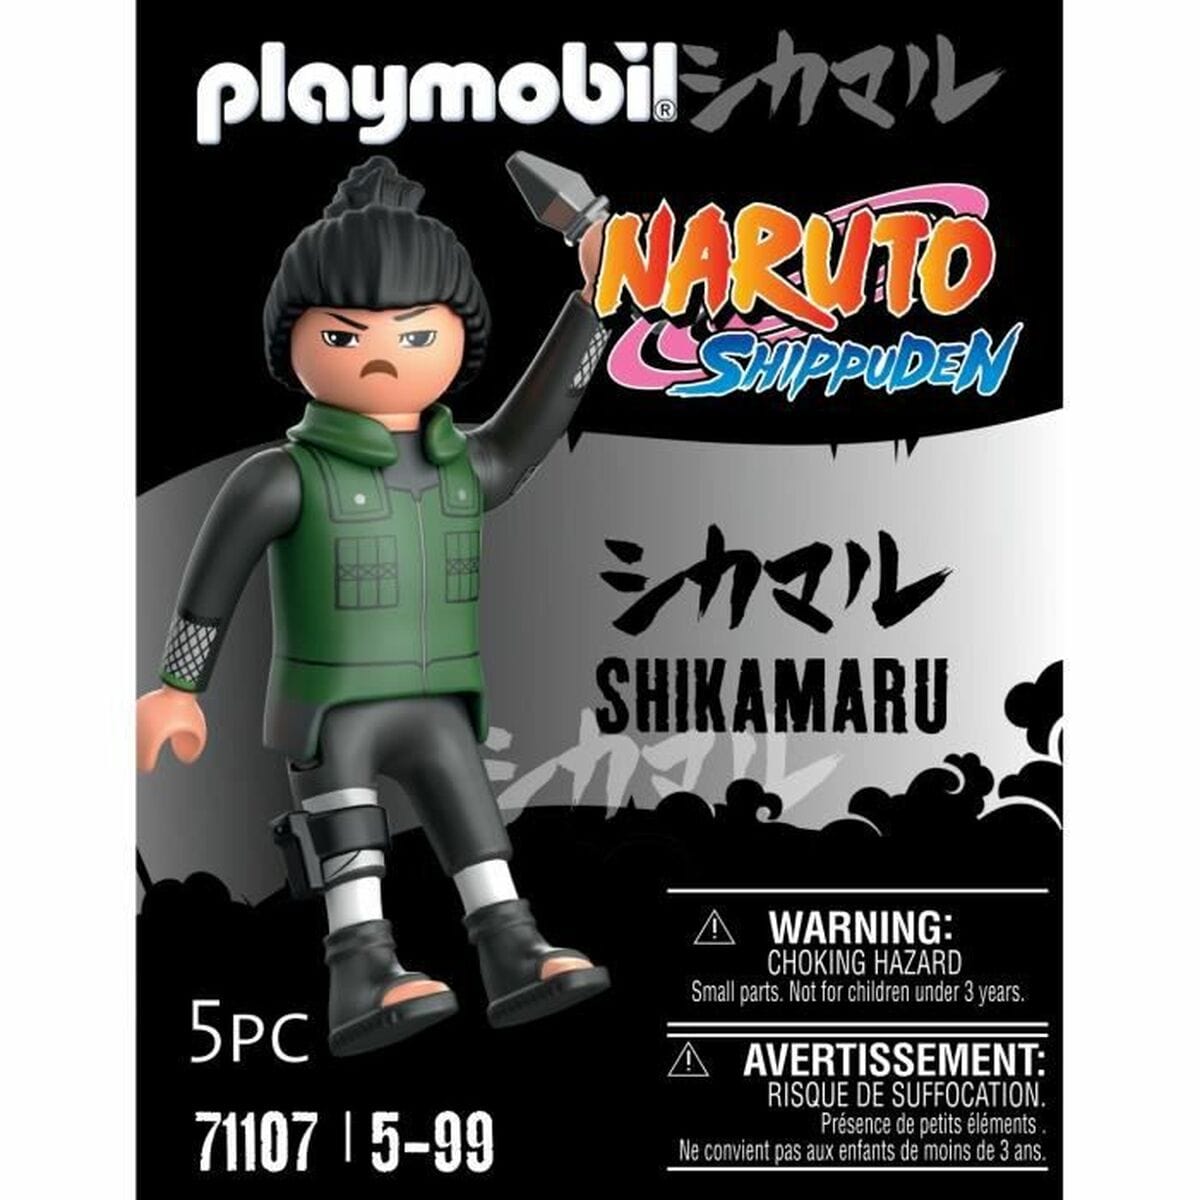 Playmobil Spielzeug | Kostüme > Spielzeug und Spiele > Action-Figuren Figur Playmobil Naruto Shippuden - Shikamaru 71107 5 Stücke